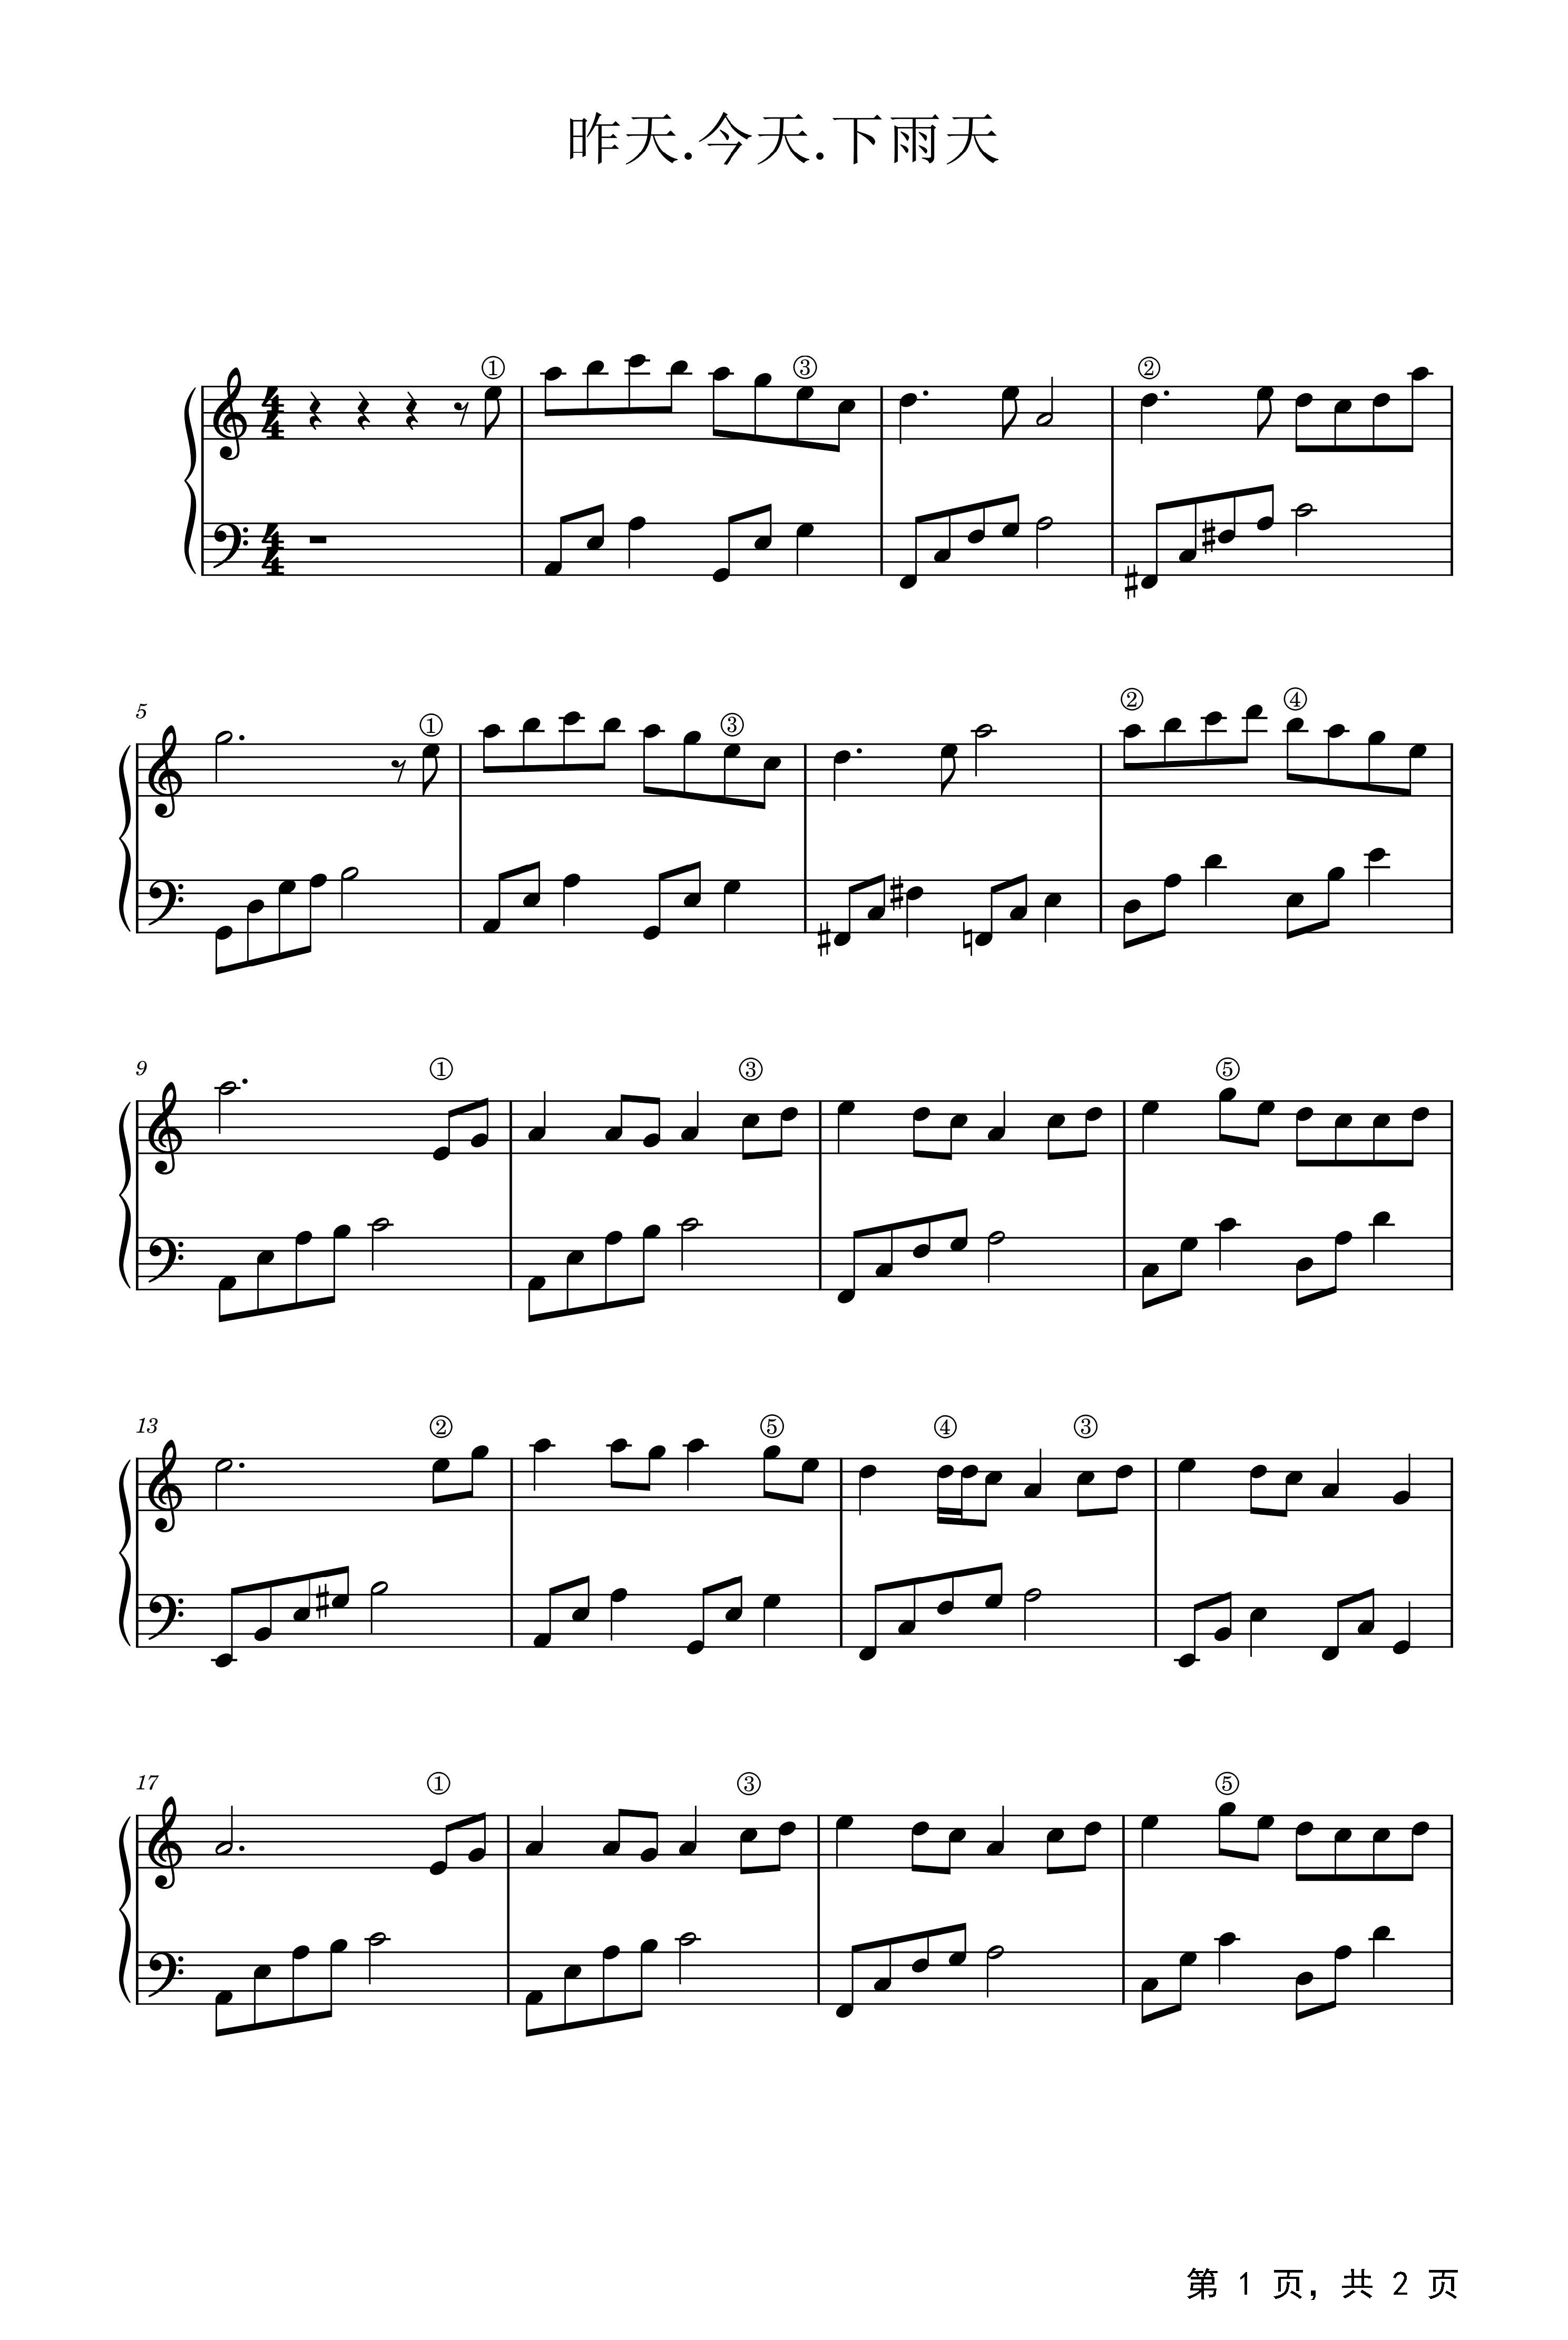 简化版《昨天的太阳》钢琴谱 - 初学者最易上手 - 齐秦带指法钢琴谱子 - 钢琴简谱